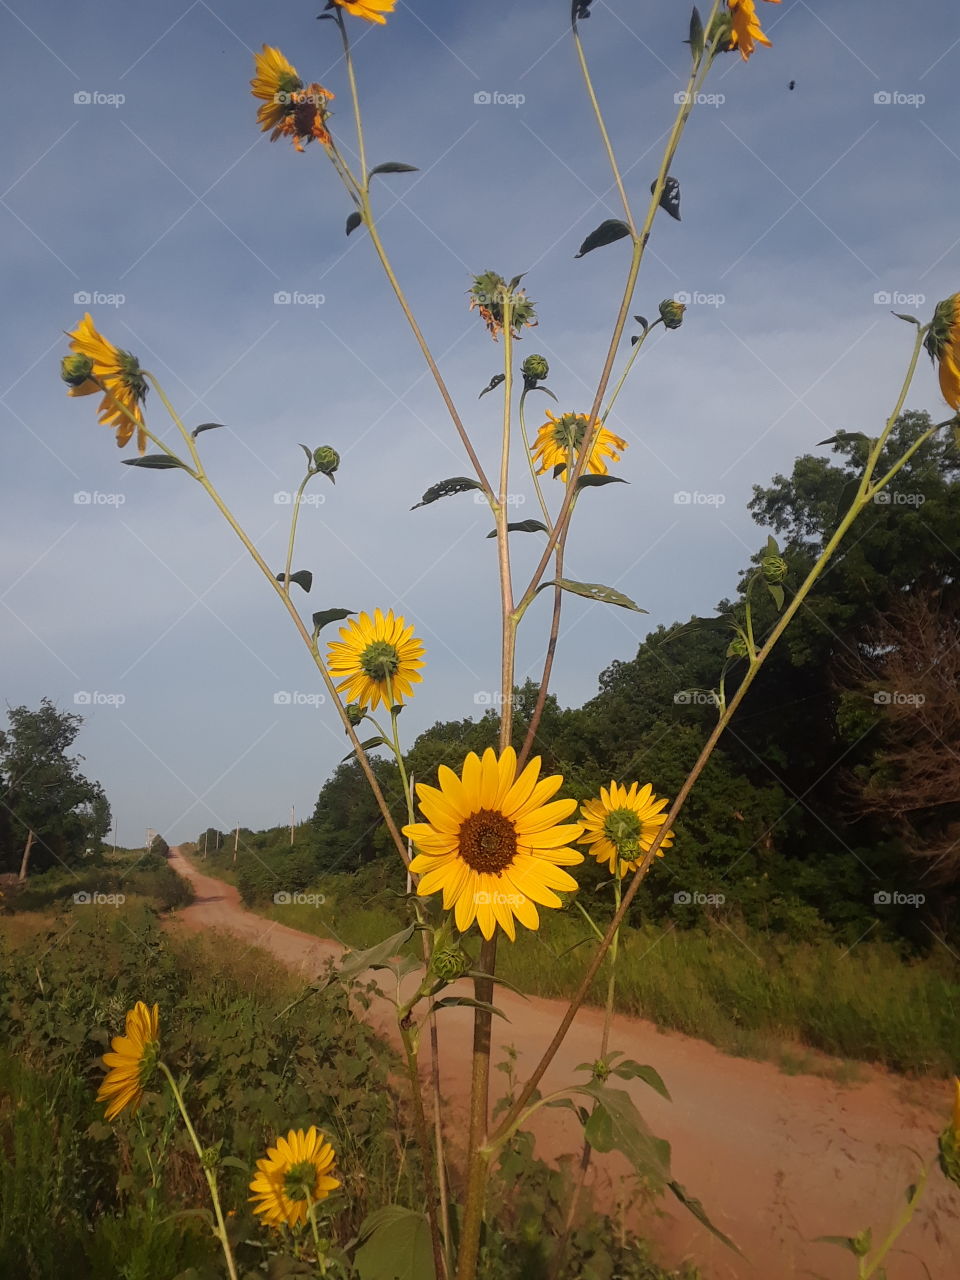 giant sunflower